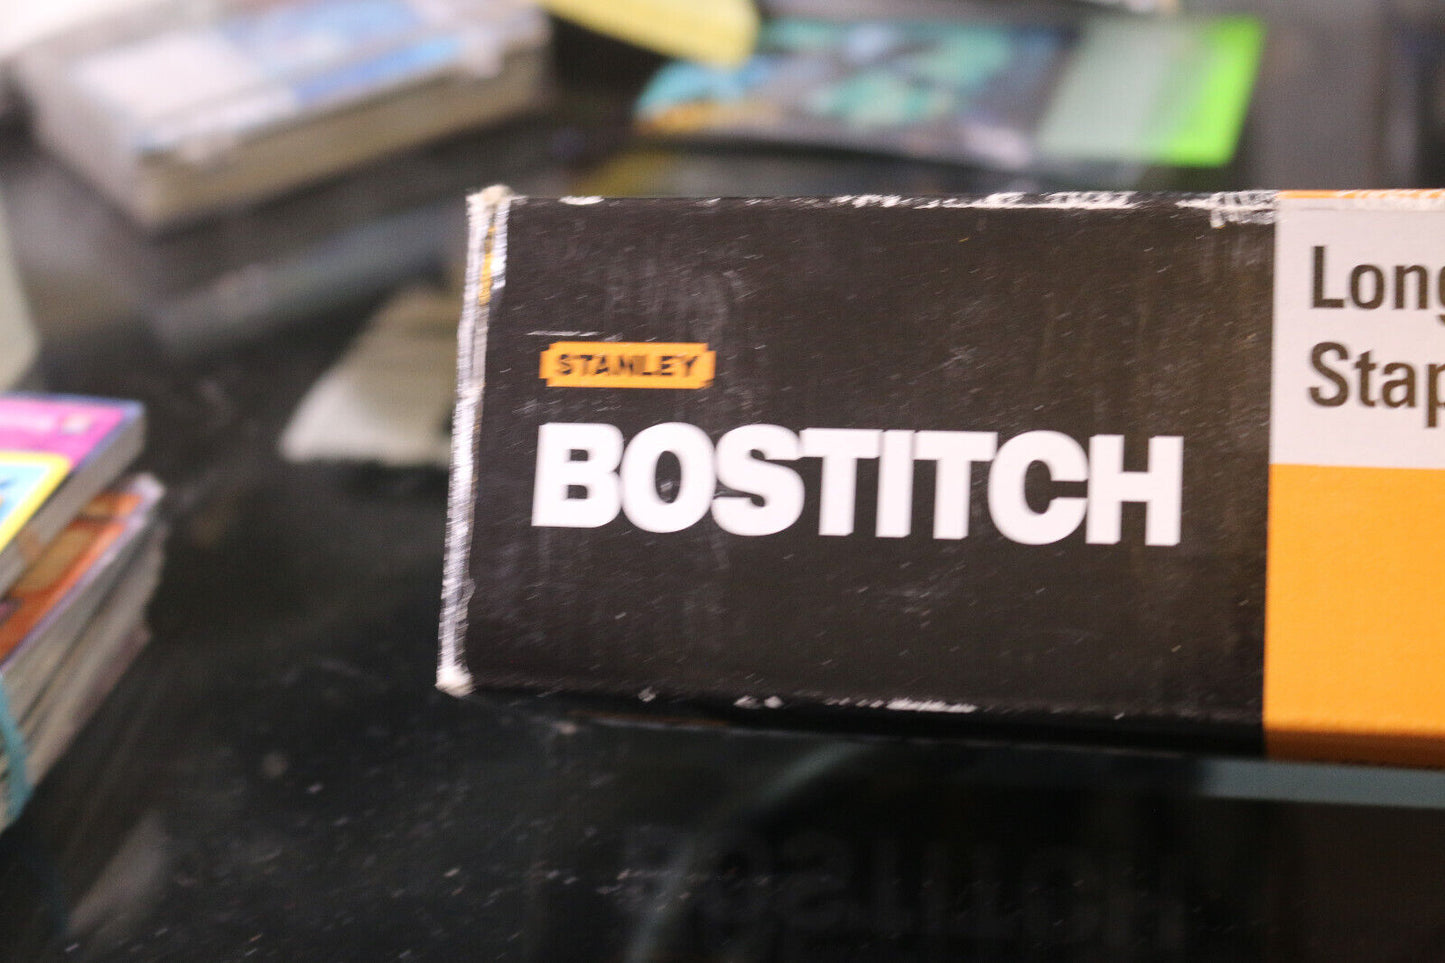 Stanley Stapler Bostitch 12" Long Reach Stapler Model  Box Included